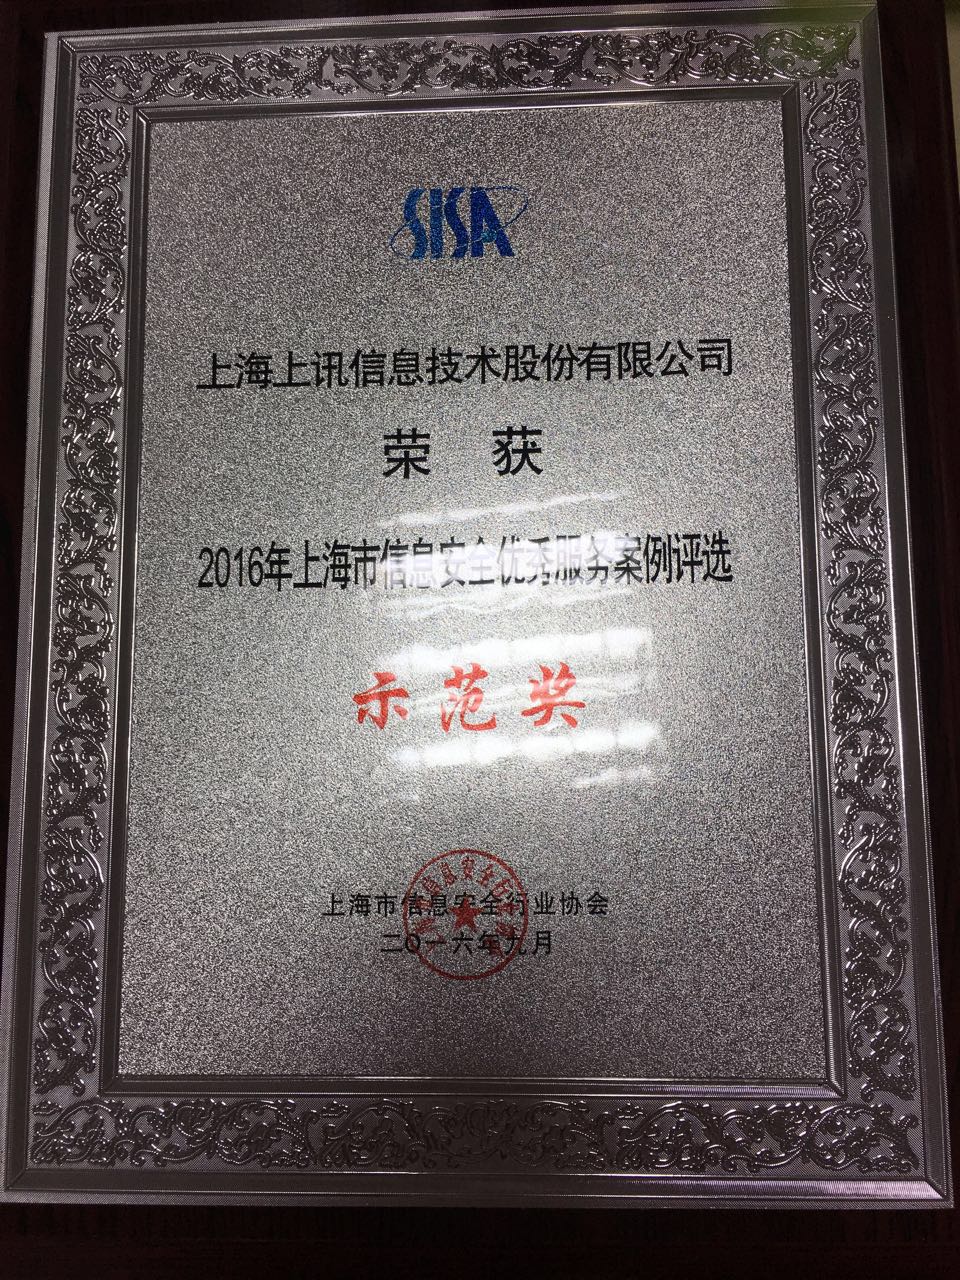 上海市信息安全优秀服务案例评选示范奖